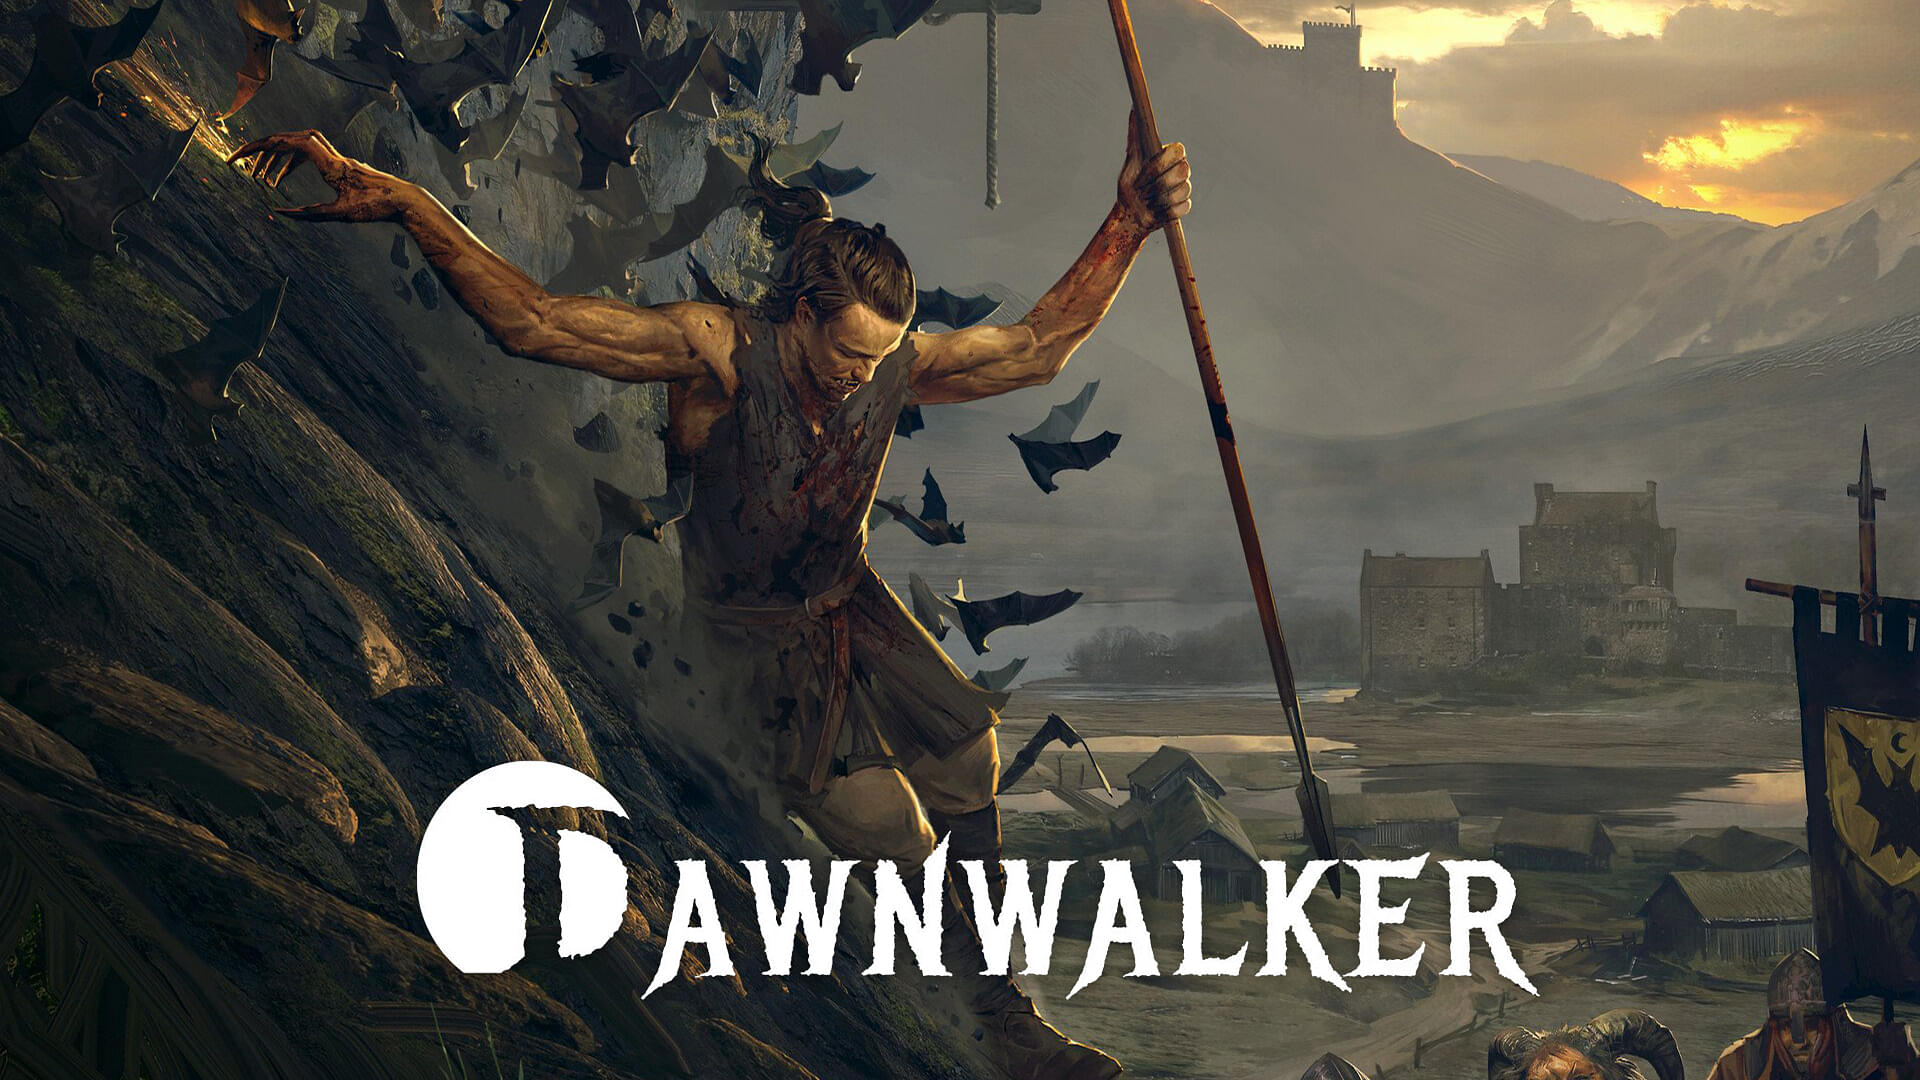 Dawnwalker by Rebel Wolves